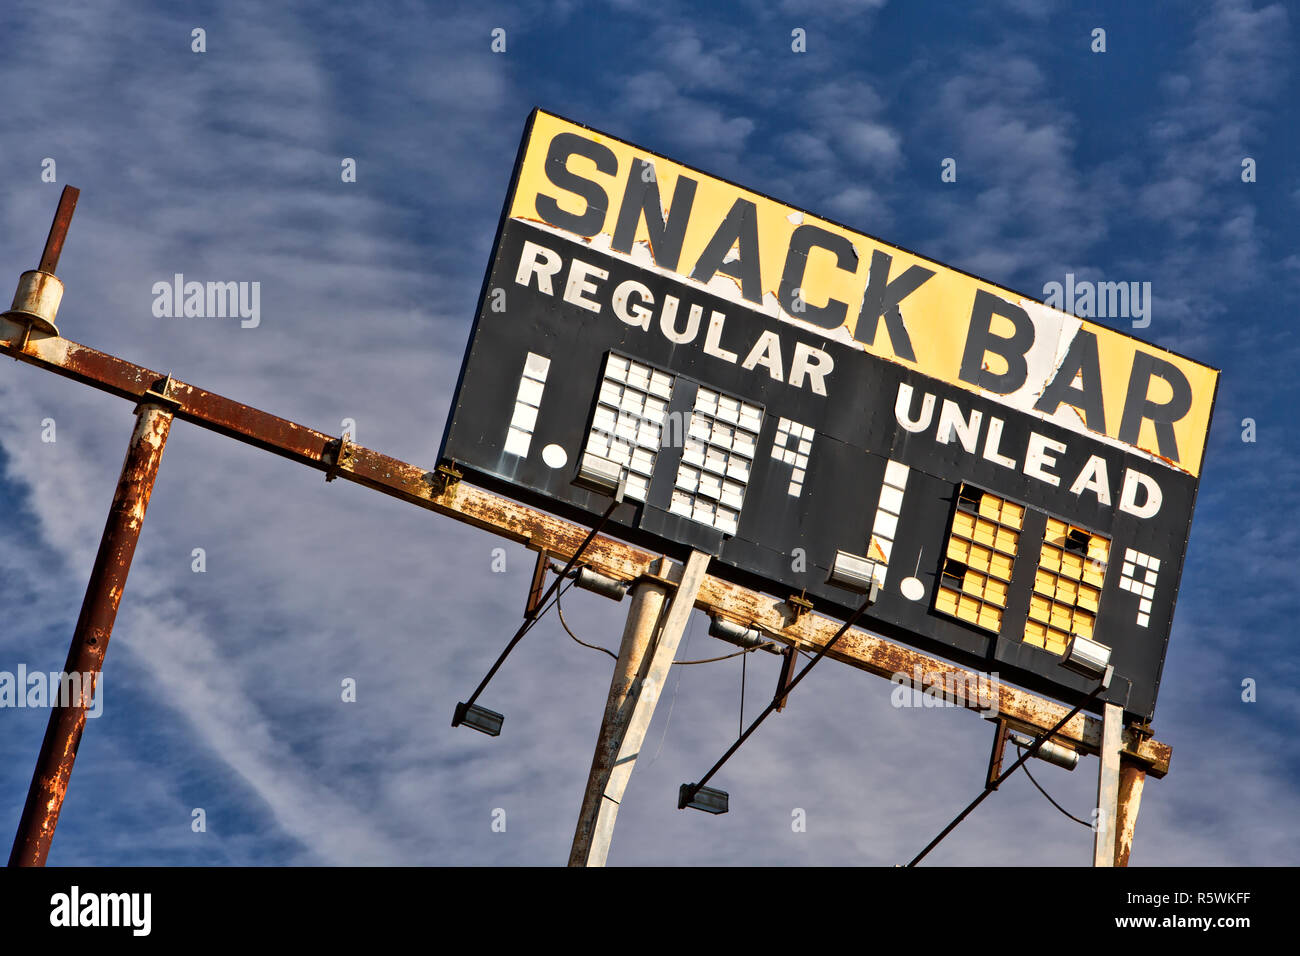 Elevata di Gas Vintage segno stazione "nack bar - regolari & Unlead' BENZINA, contro un sparsi in cielo blu. Foto Stock